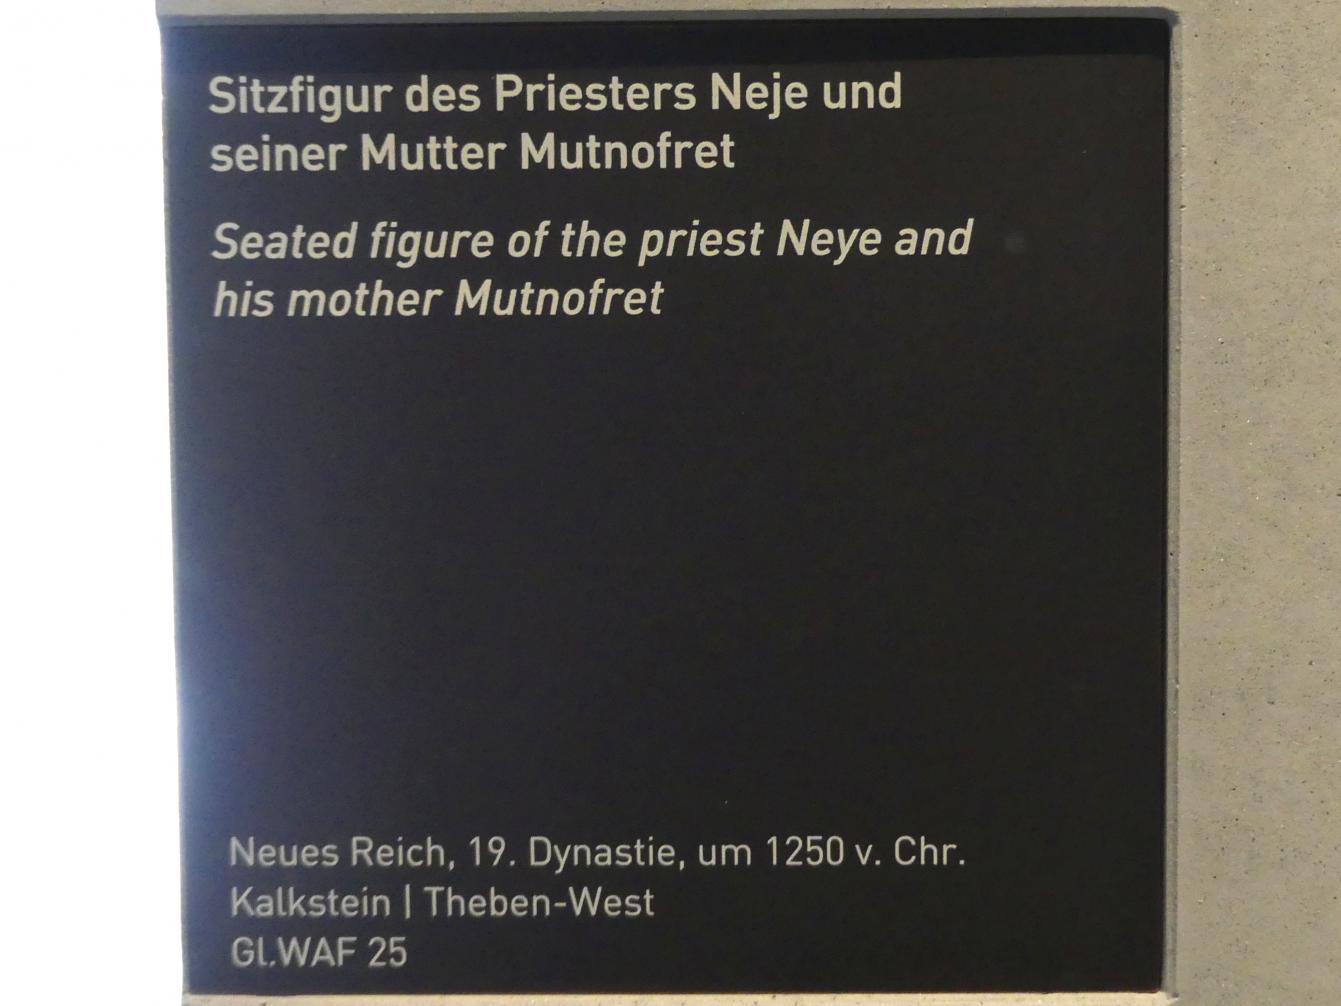 Sitzfigur des Priesters Neje und seiner Mutter Mutnofret, 19. Dynastie, 953 - 887 v. Chr., 1250 v. Chr., Bild 6/6